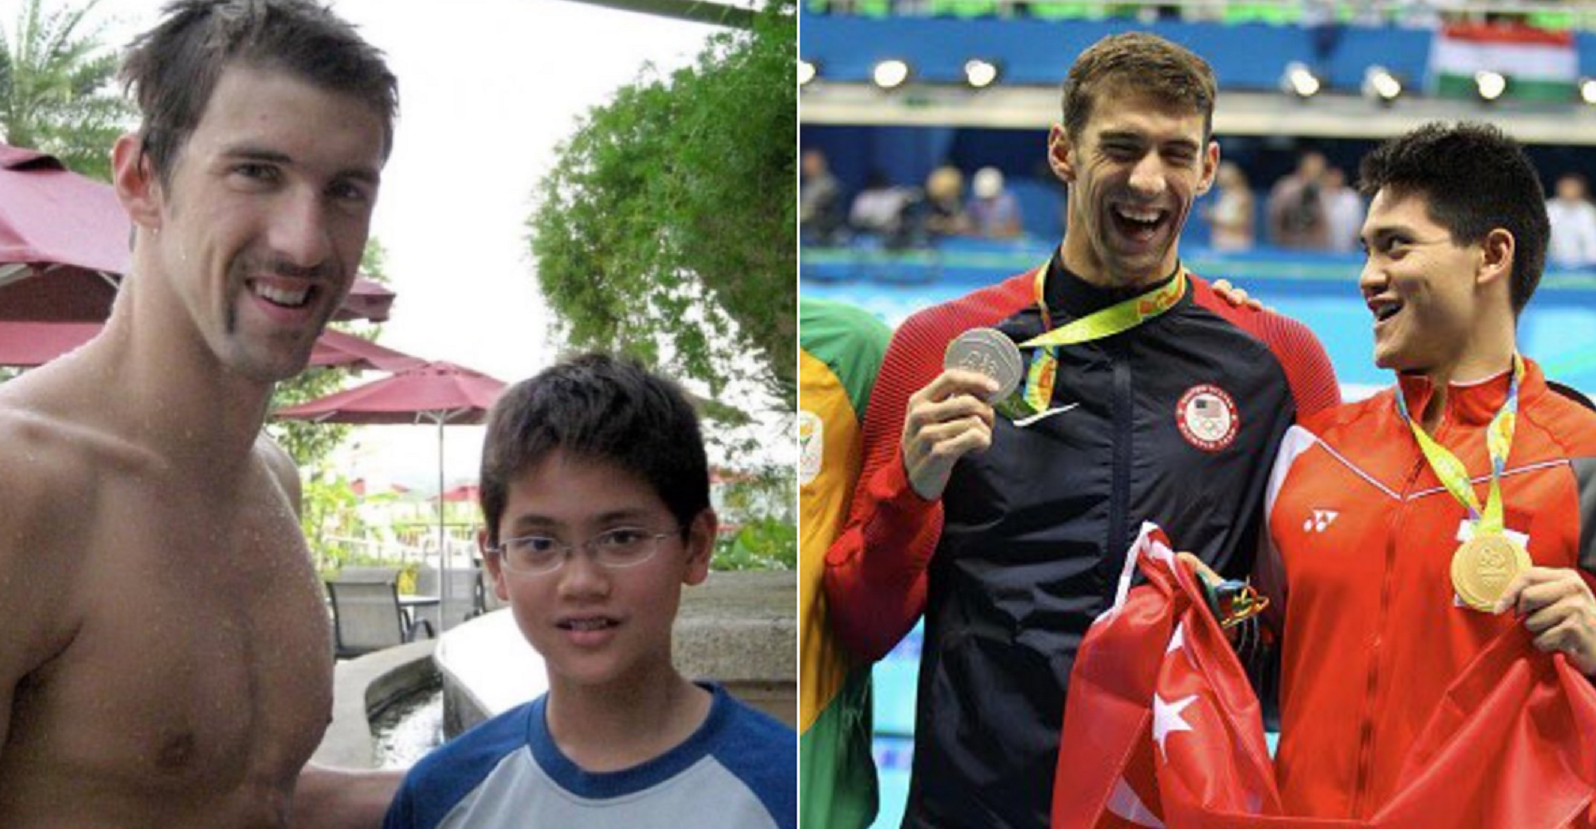 Em 2008 conheceu o ídolo Michael Phelps. Hoje bateu-o na piscina